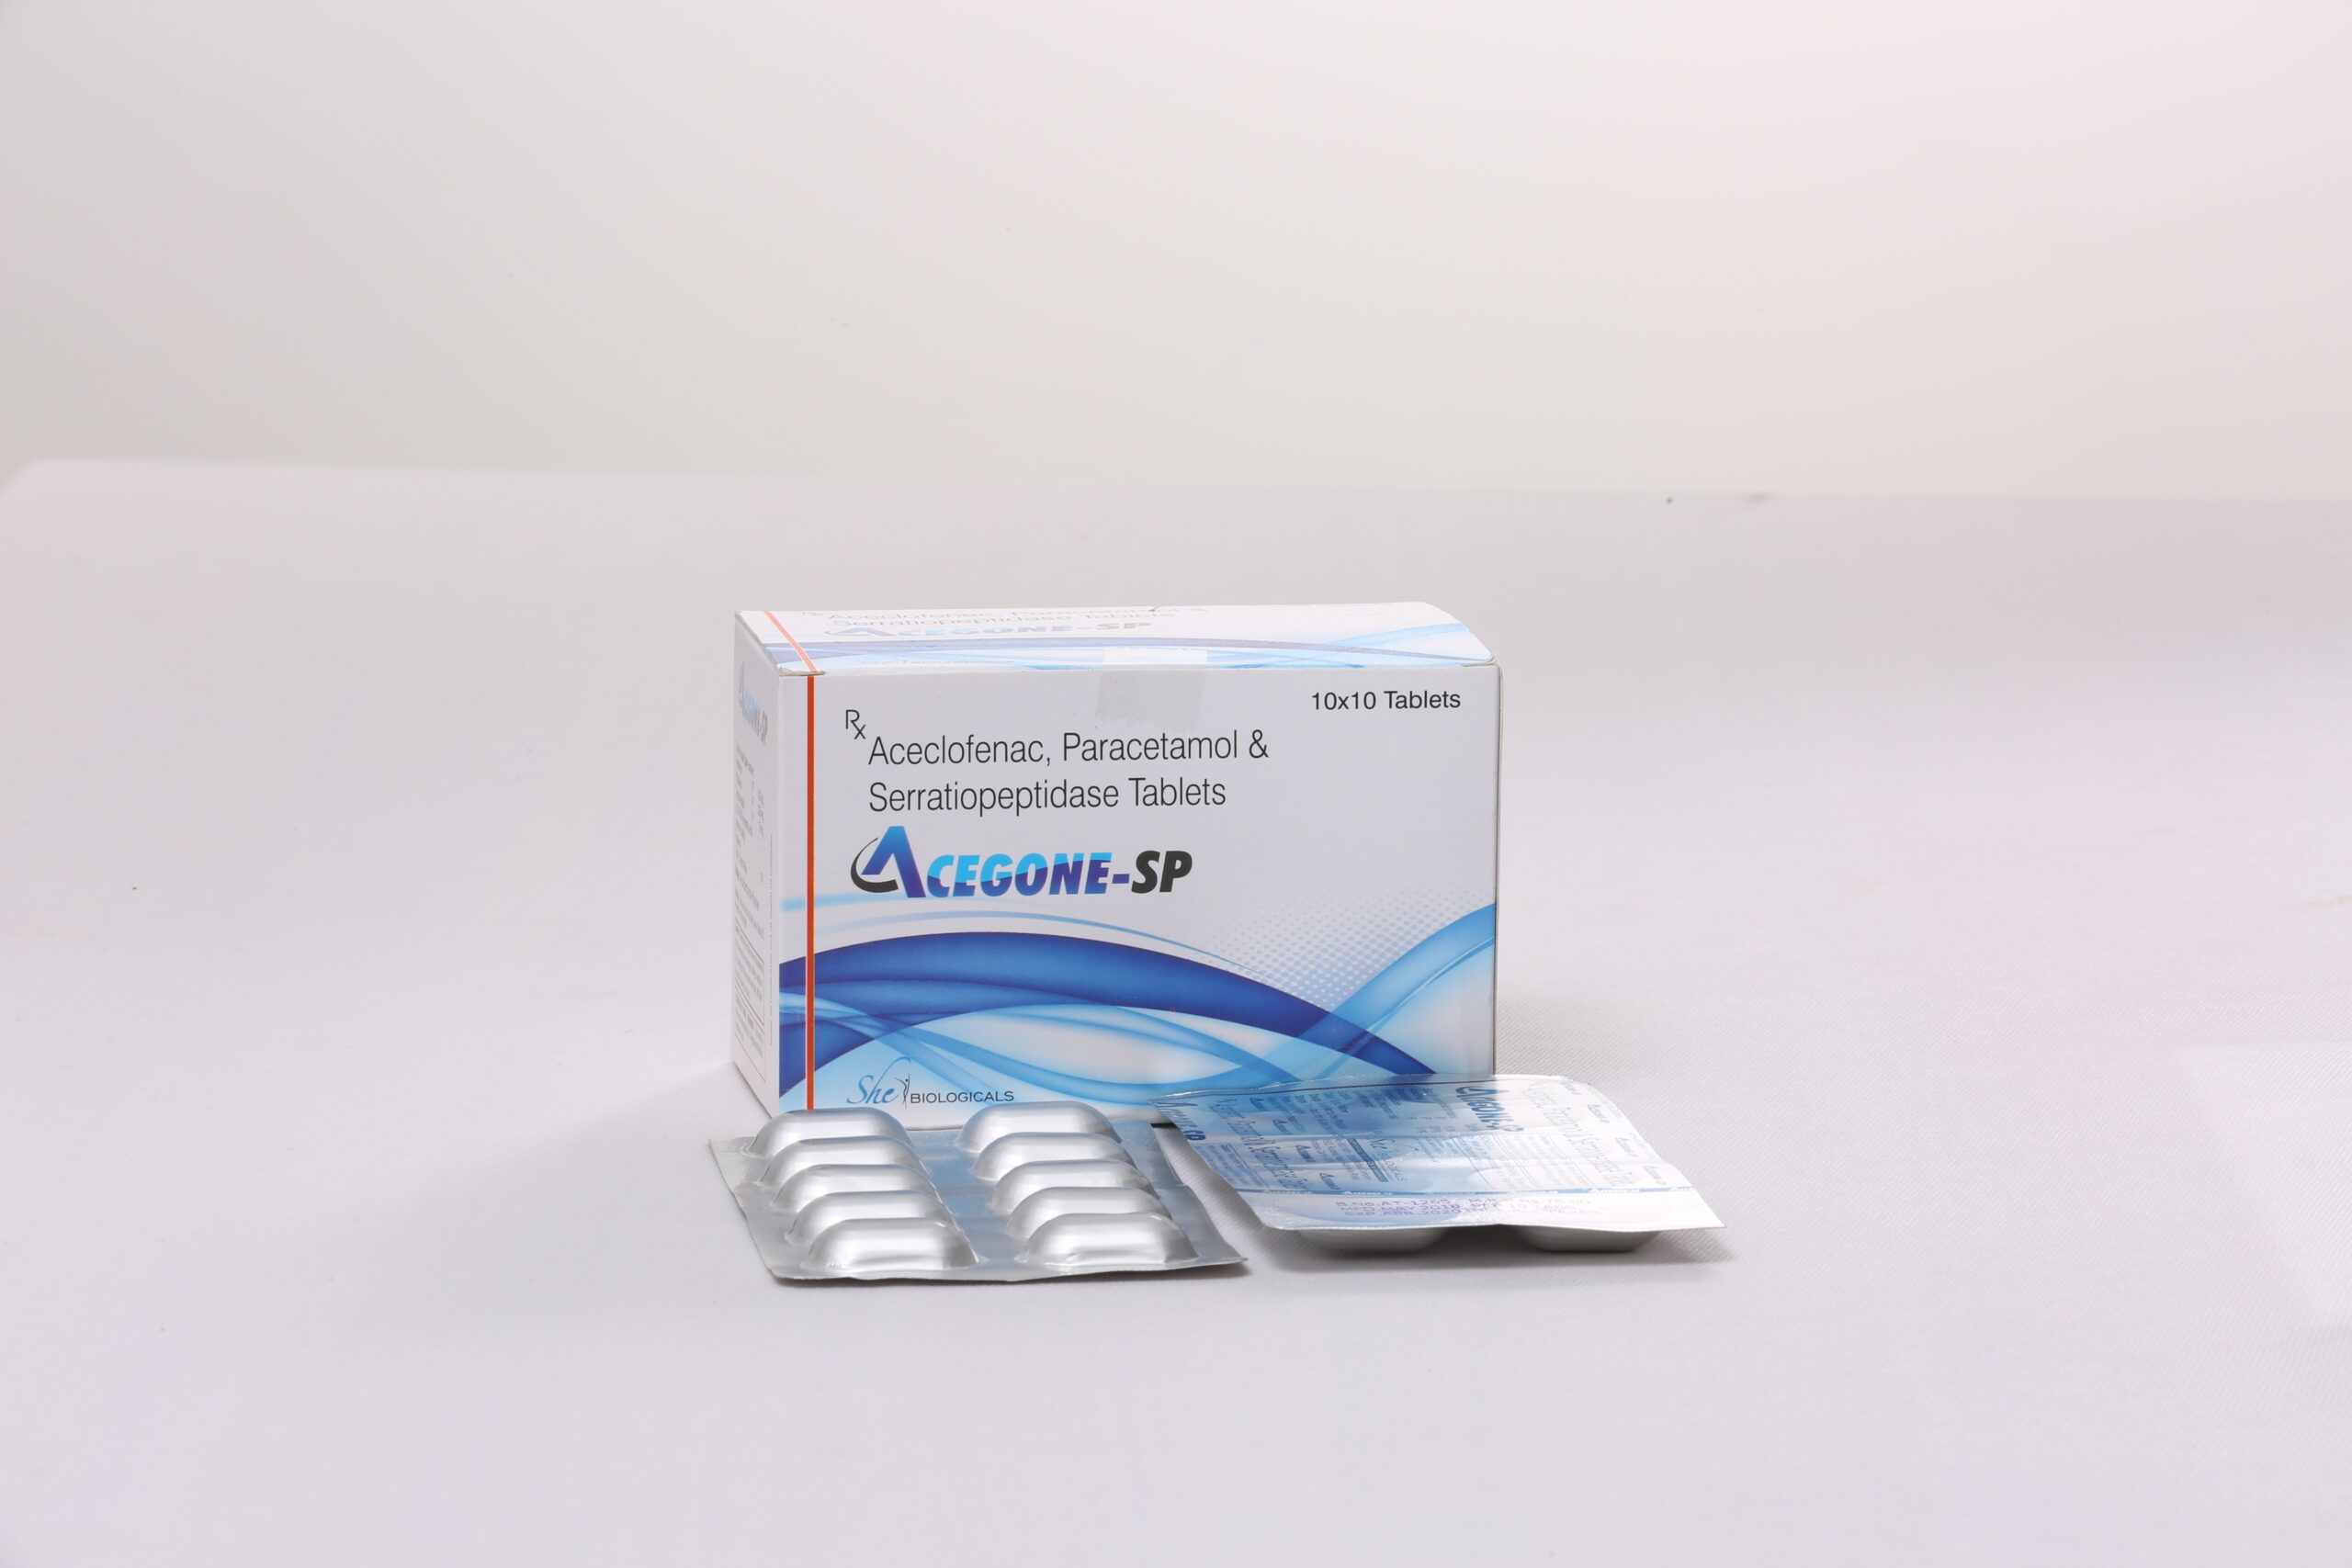 ACEGONE-SP (Aceclofenac Paracetamol Serratiopeptidase)